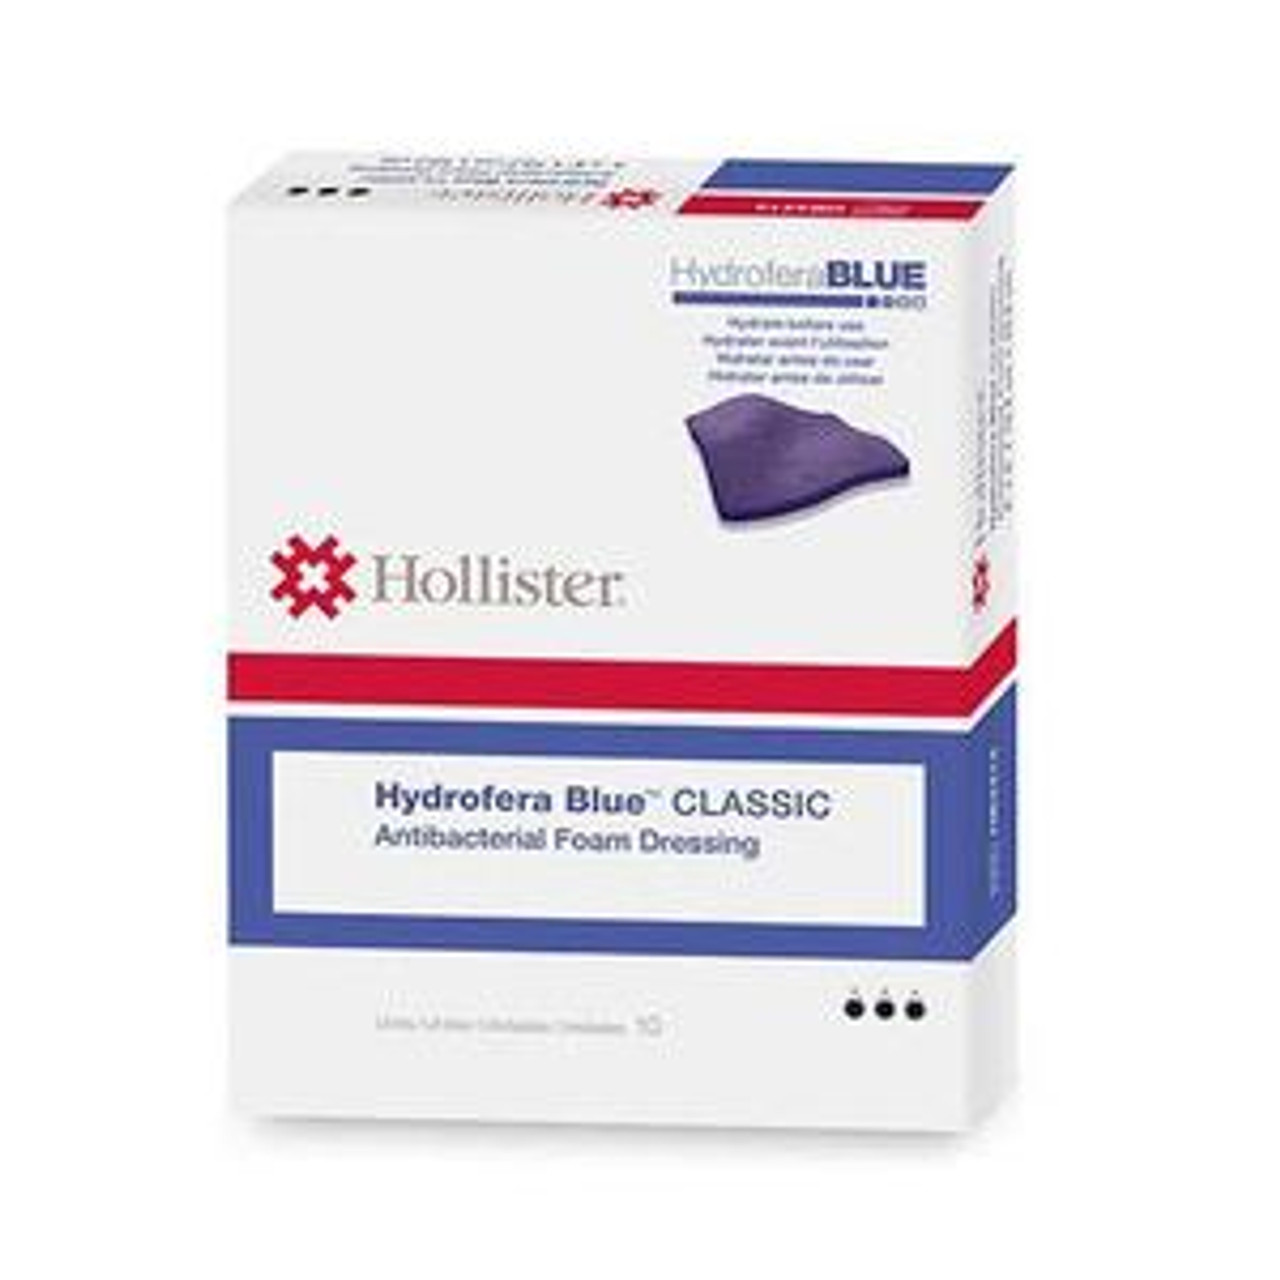 Hollister Hydrofera Blue Ready Foam Dressing 4 x 5